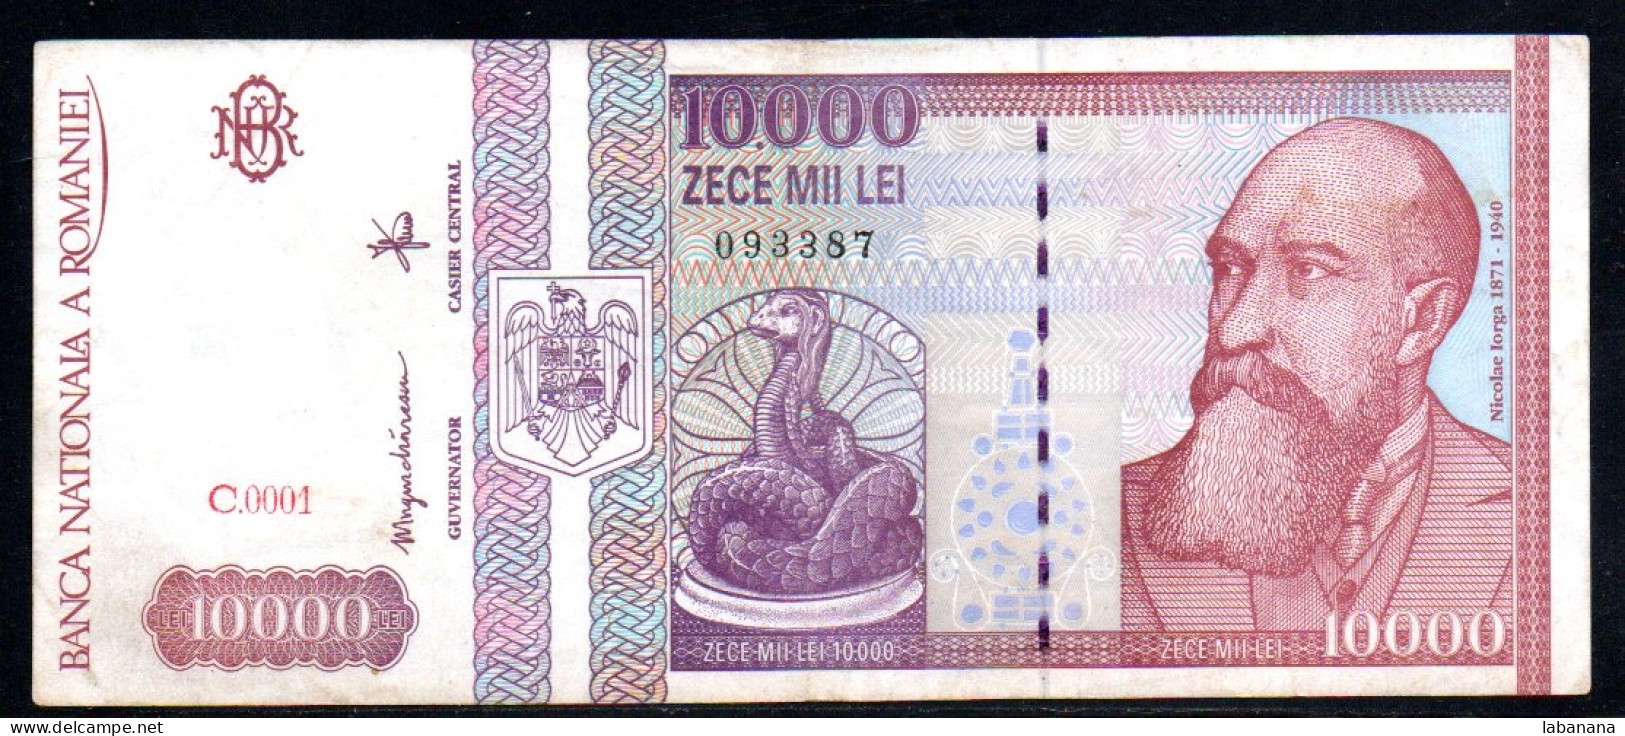 659-Roumanie 10 000 Lei 1994 C0001 - Rumänien